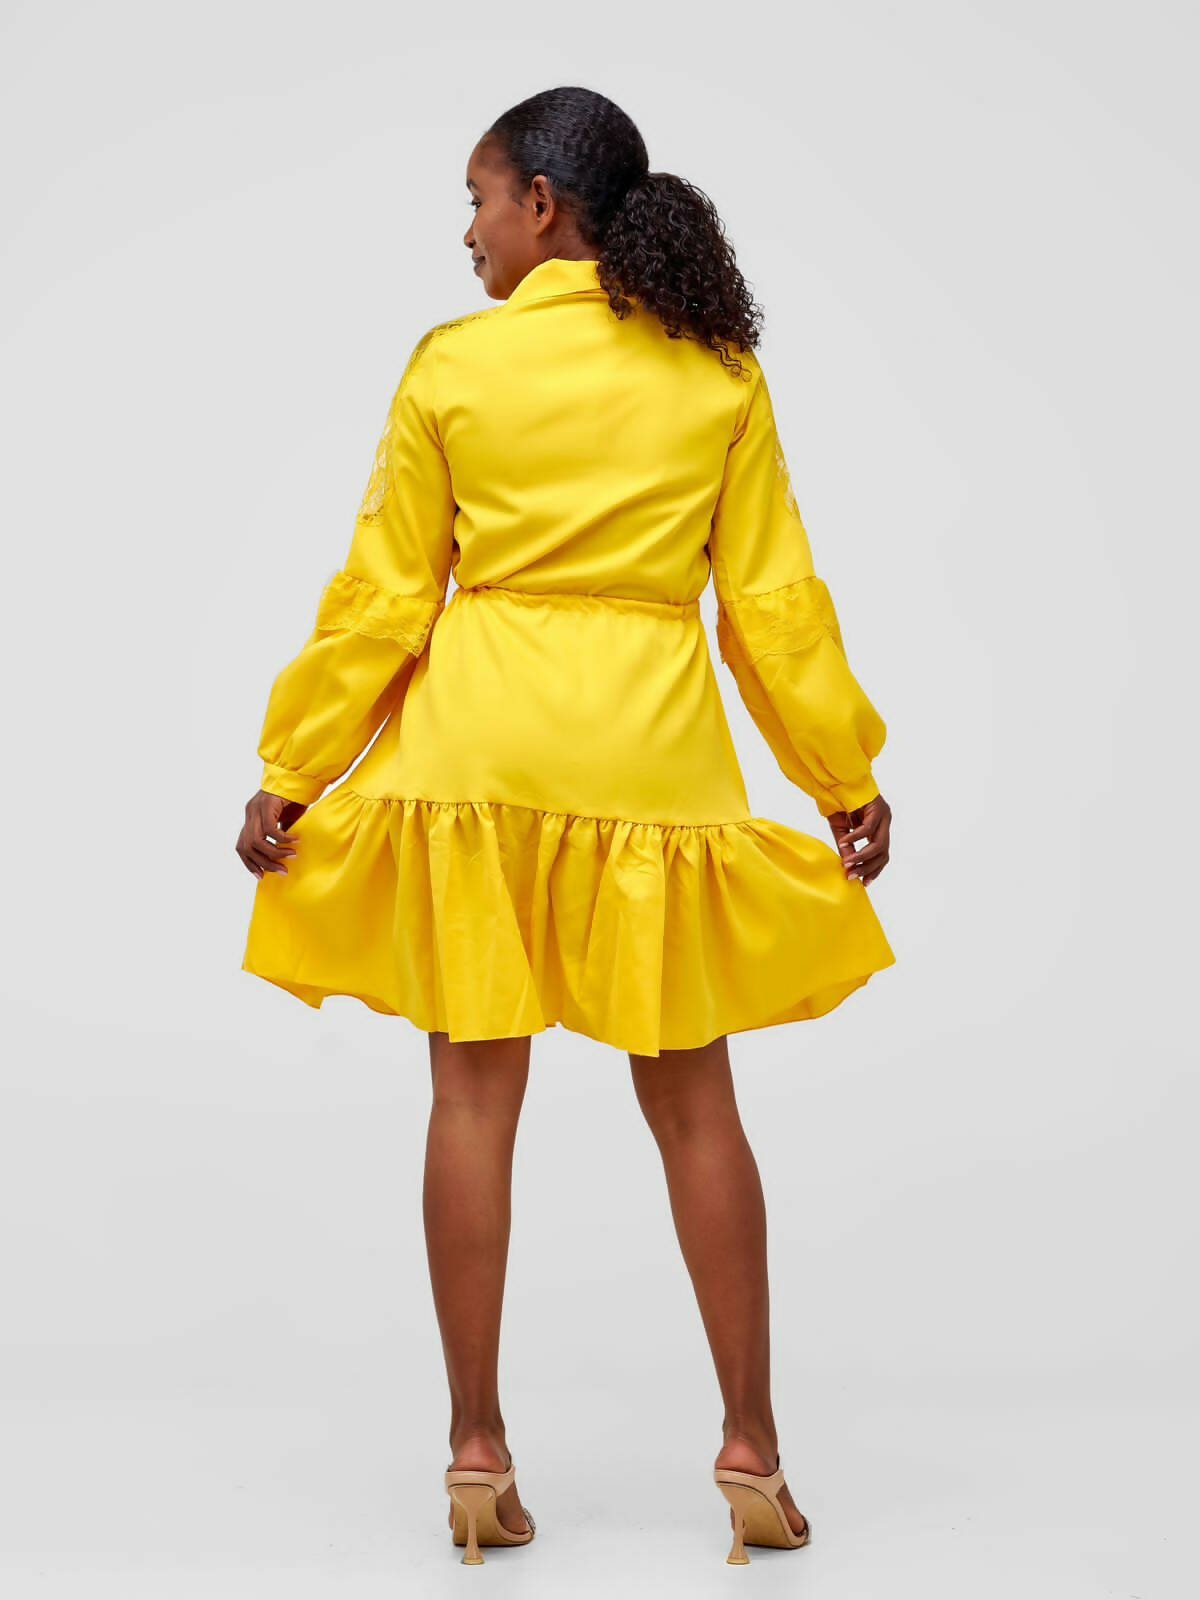 StylishSisters Dress - Mustard - Shopzetu